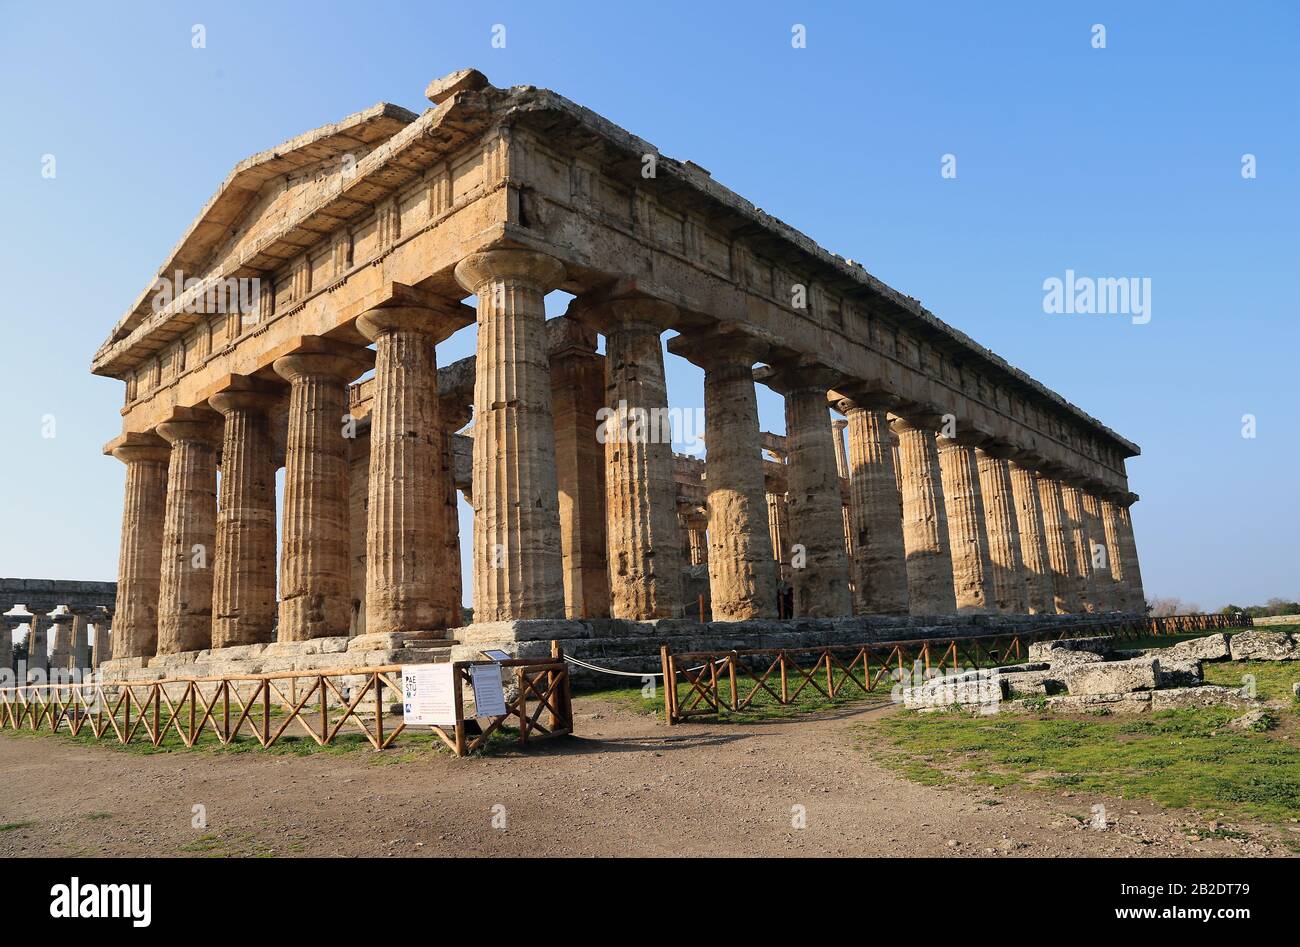 Tempel von Hera II., so genannter Tempel des Neptun. Der größte Tempel von Paestum. (460-450 V. CHR.). Dorischer Orden, Paestum, Kampanien, Italien. Stockfoto